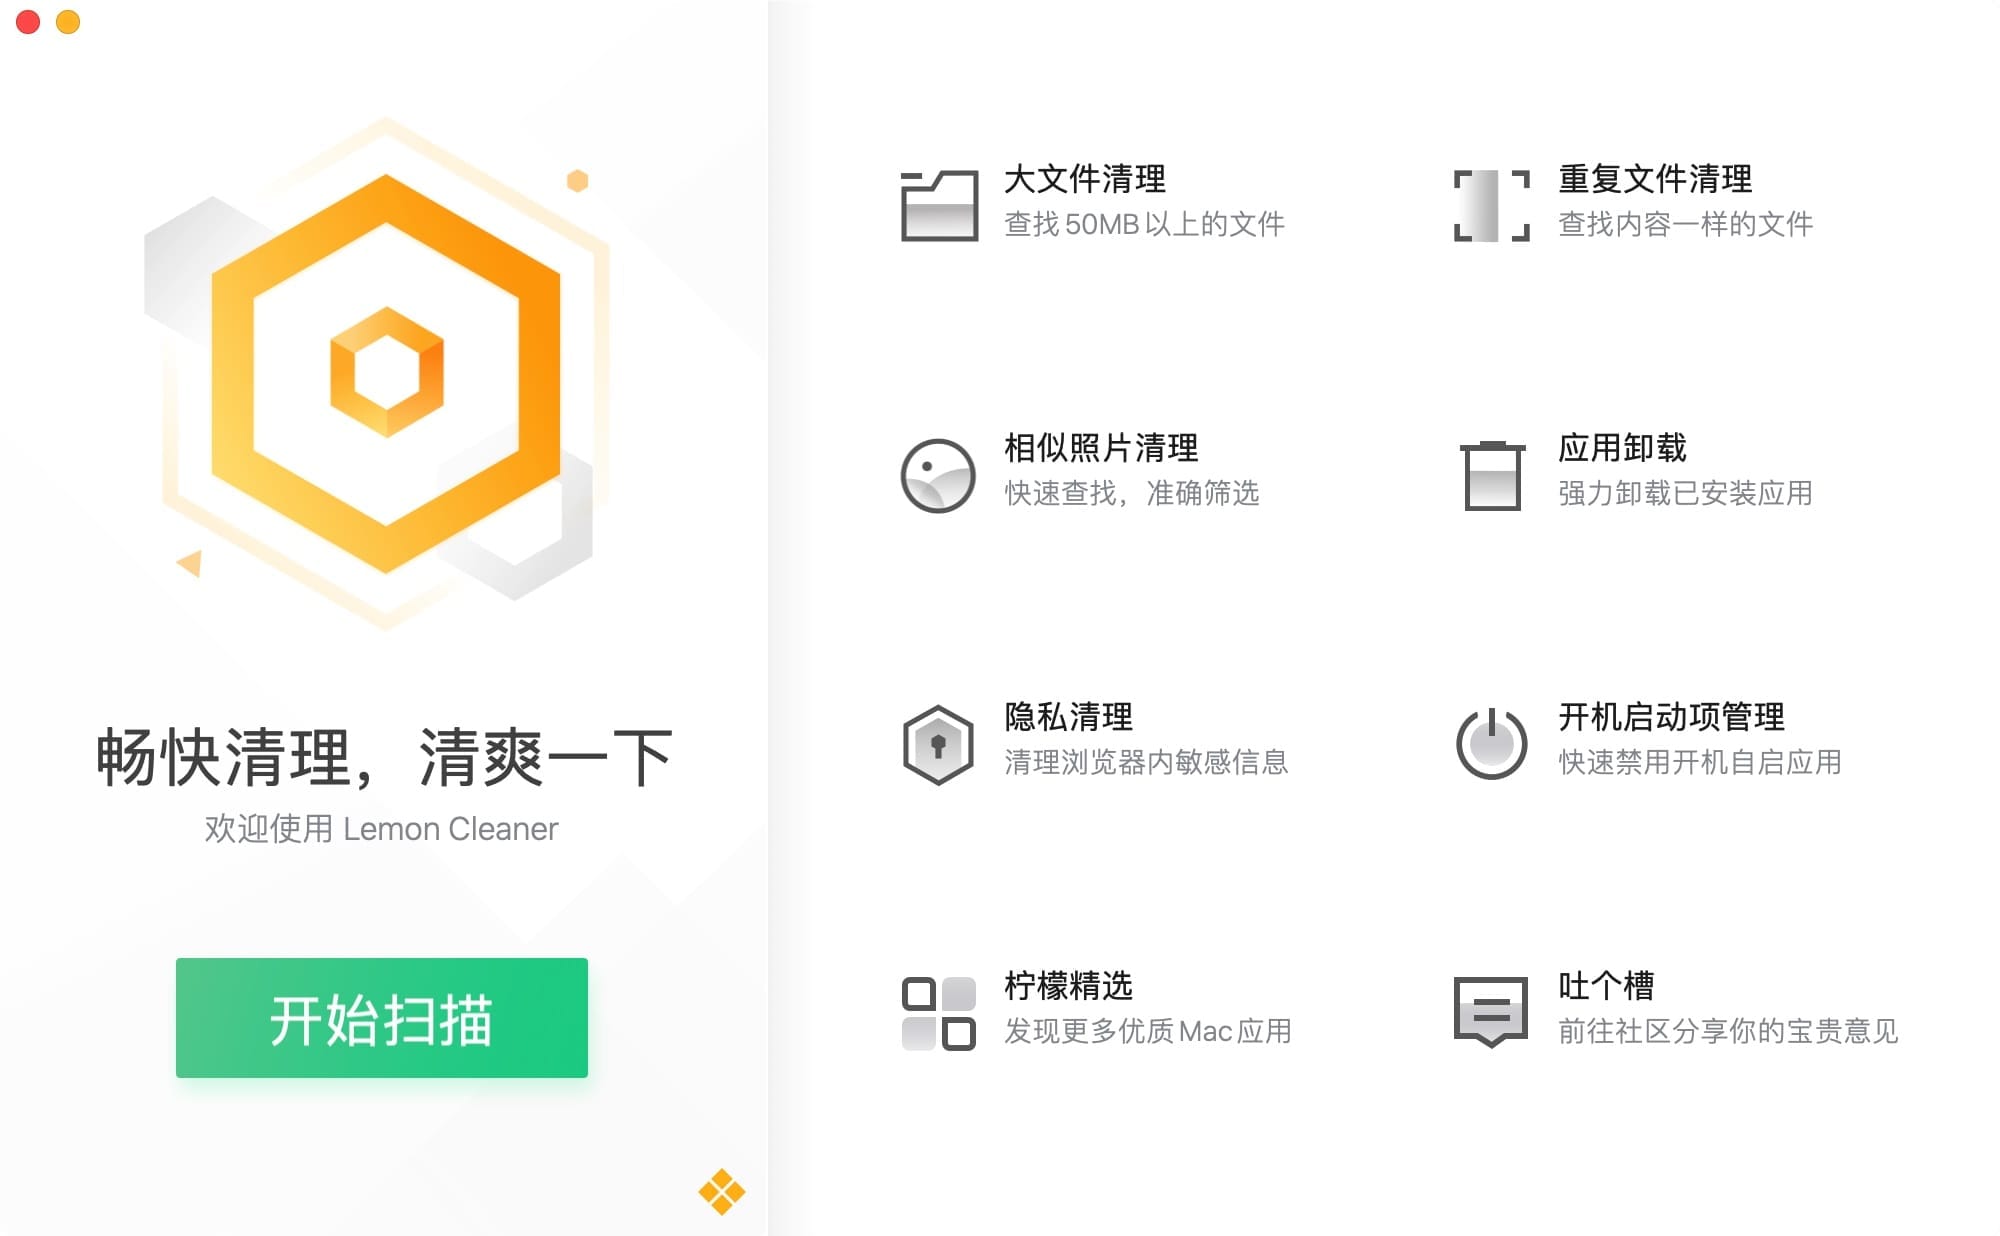 腾讯柠檬清理 4.9.0 中文版  mac系统优化清理工具  第1张